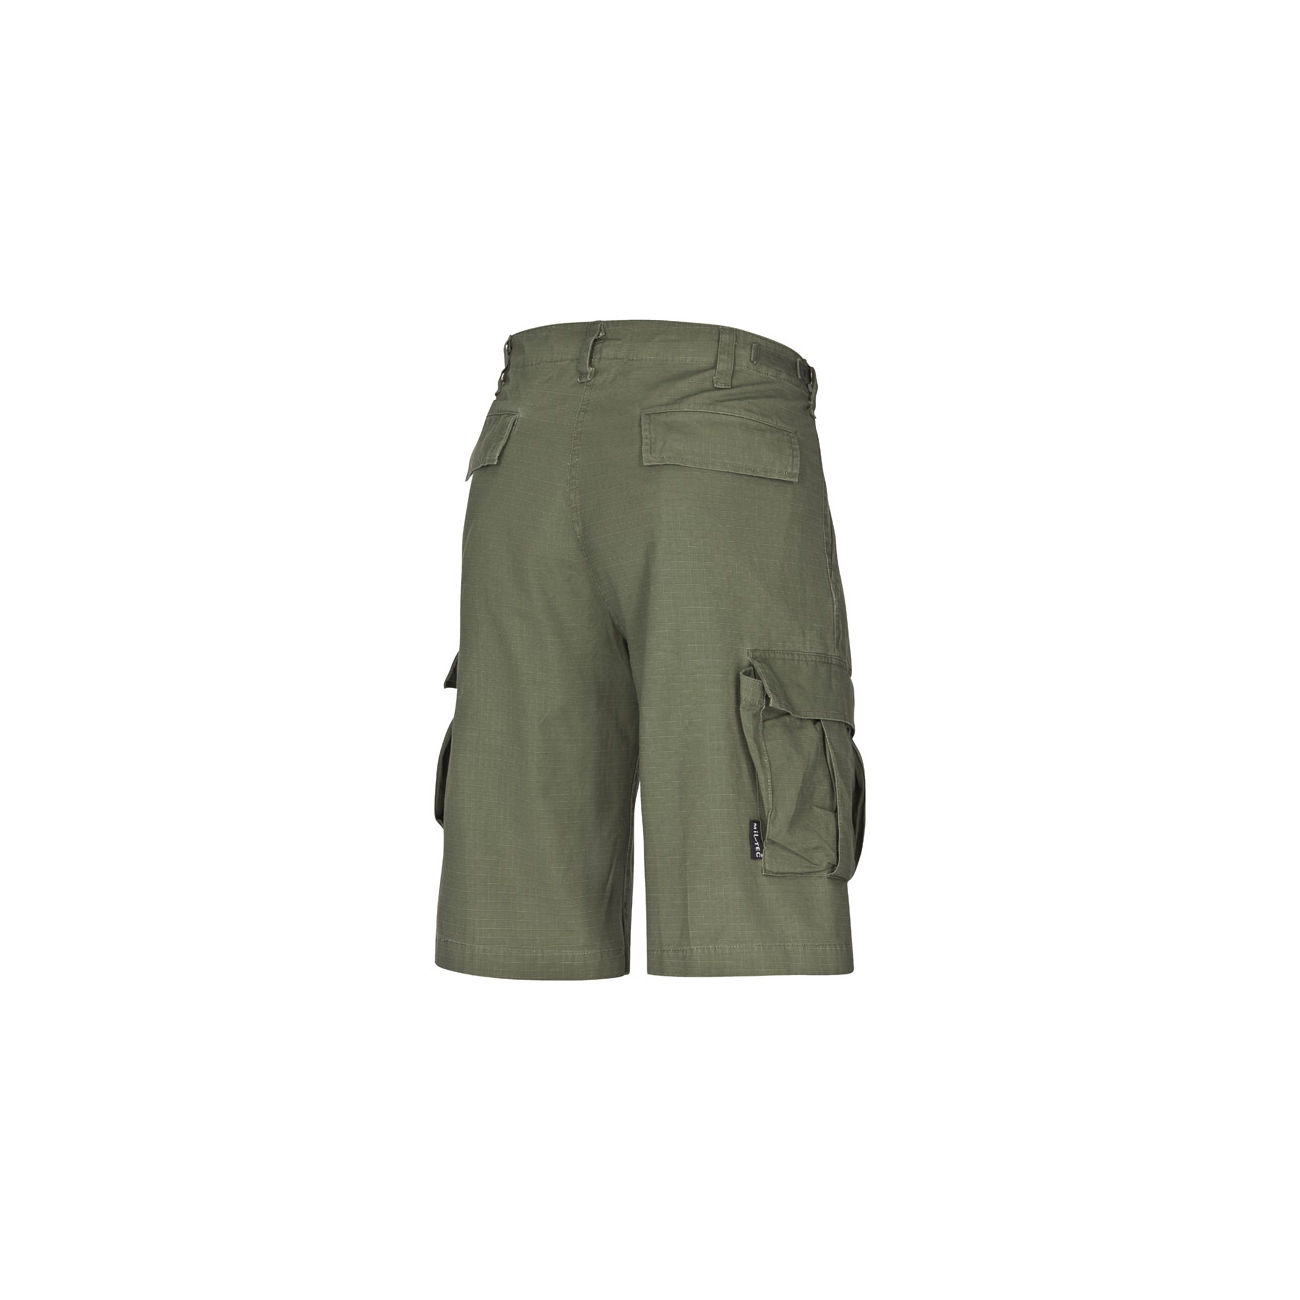 Bermuda Shorts, gewaschen, Ripstop, oliv Bild 1